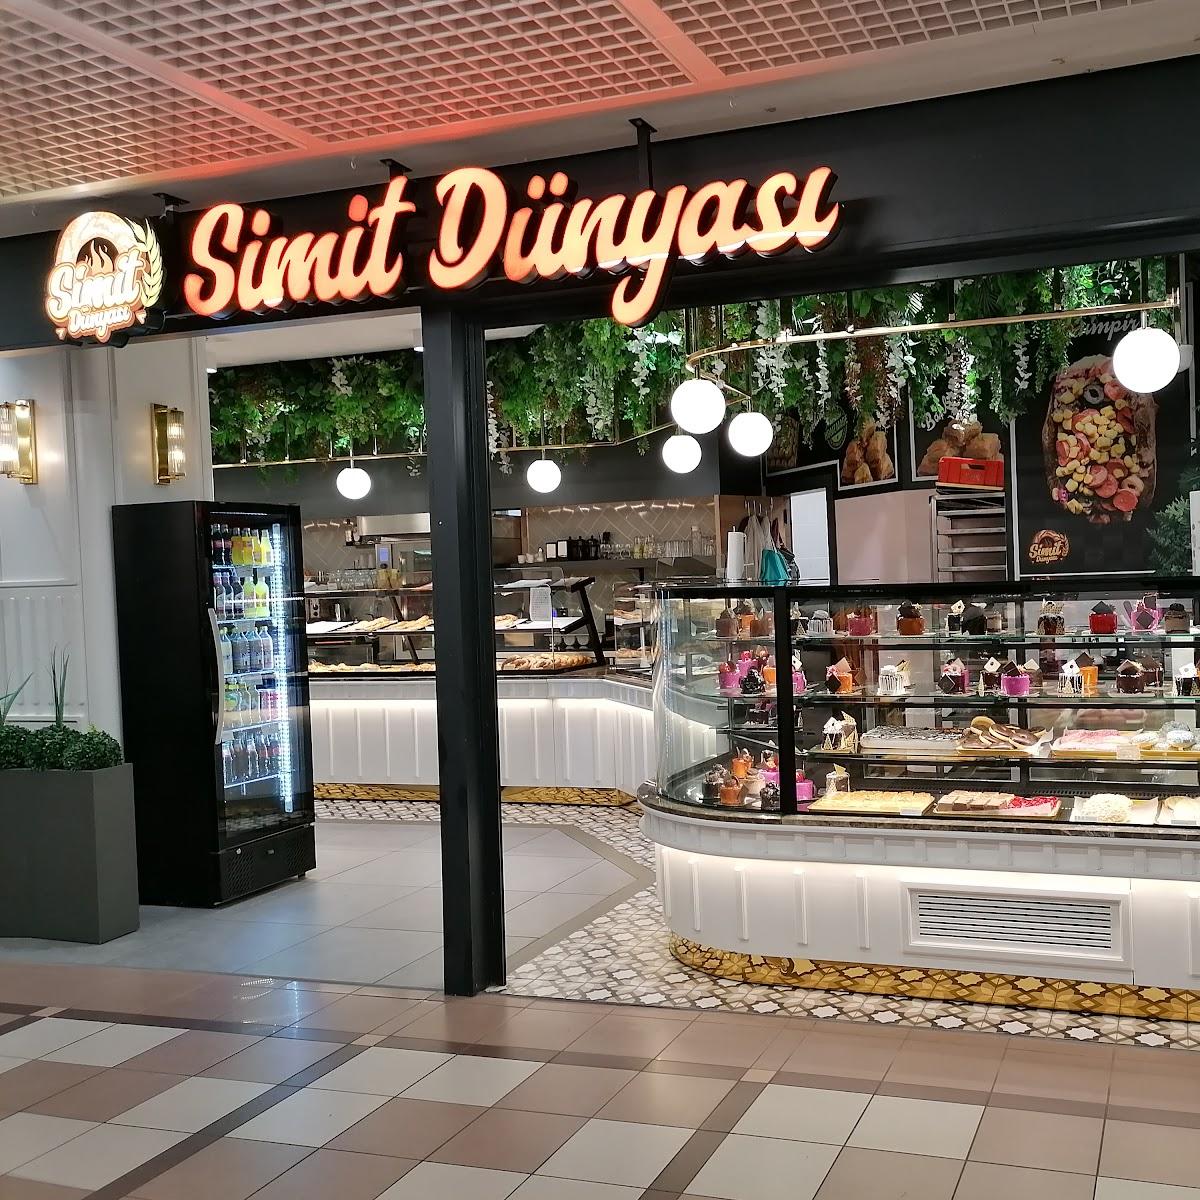 Restaurant "Simit Dunyasi Staaken Center" in Berlin